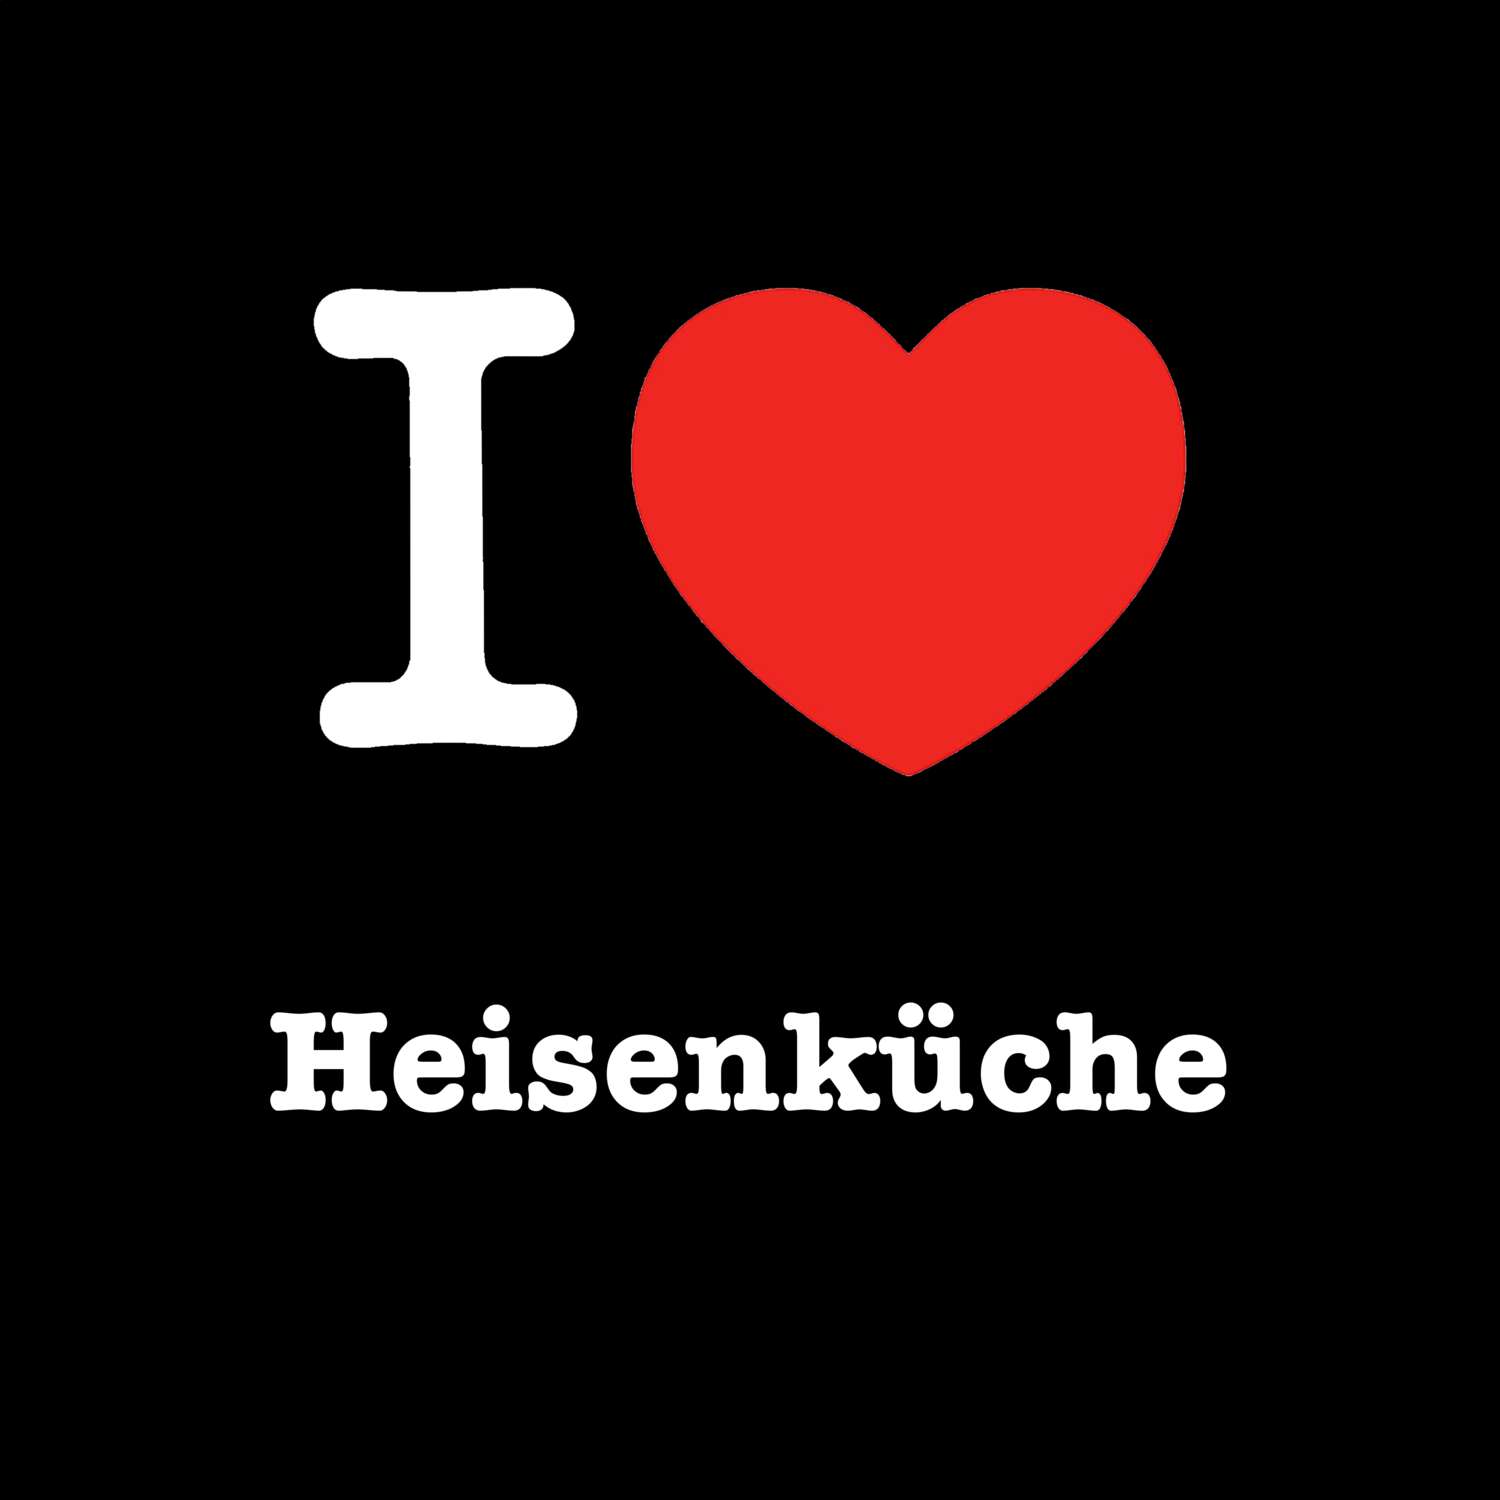 Heisenküche T-Shirt »I love«